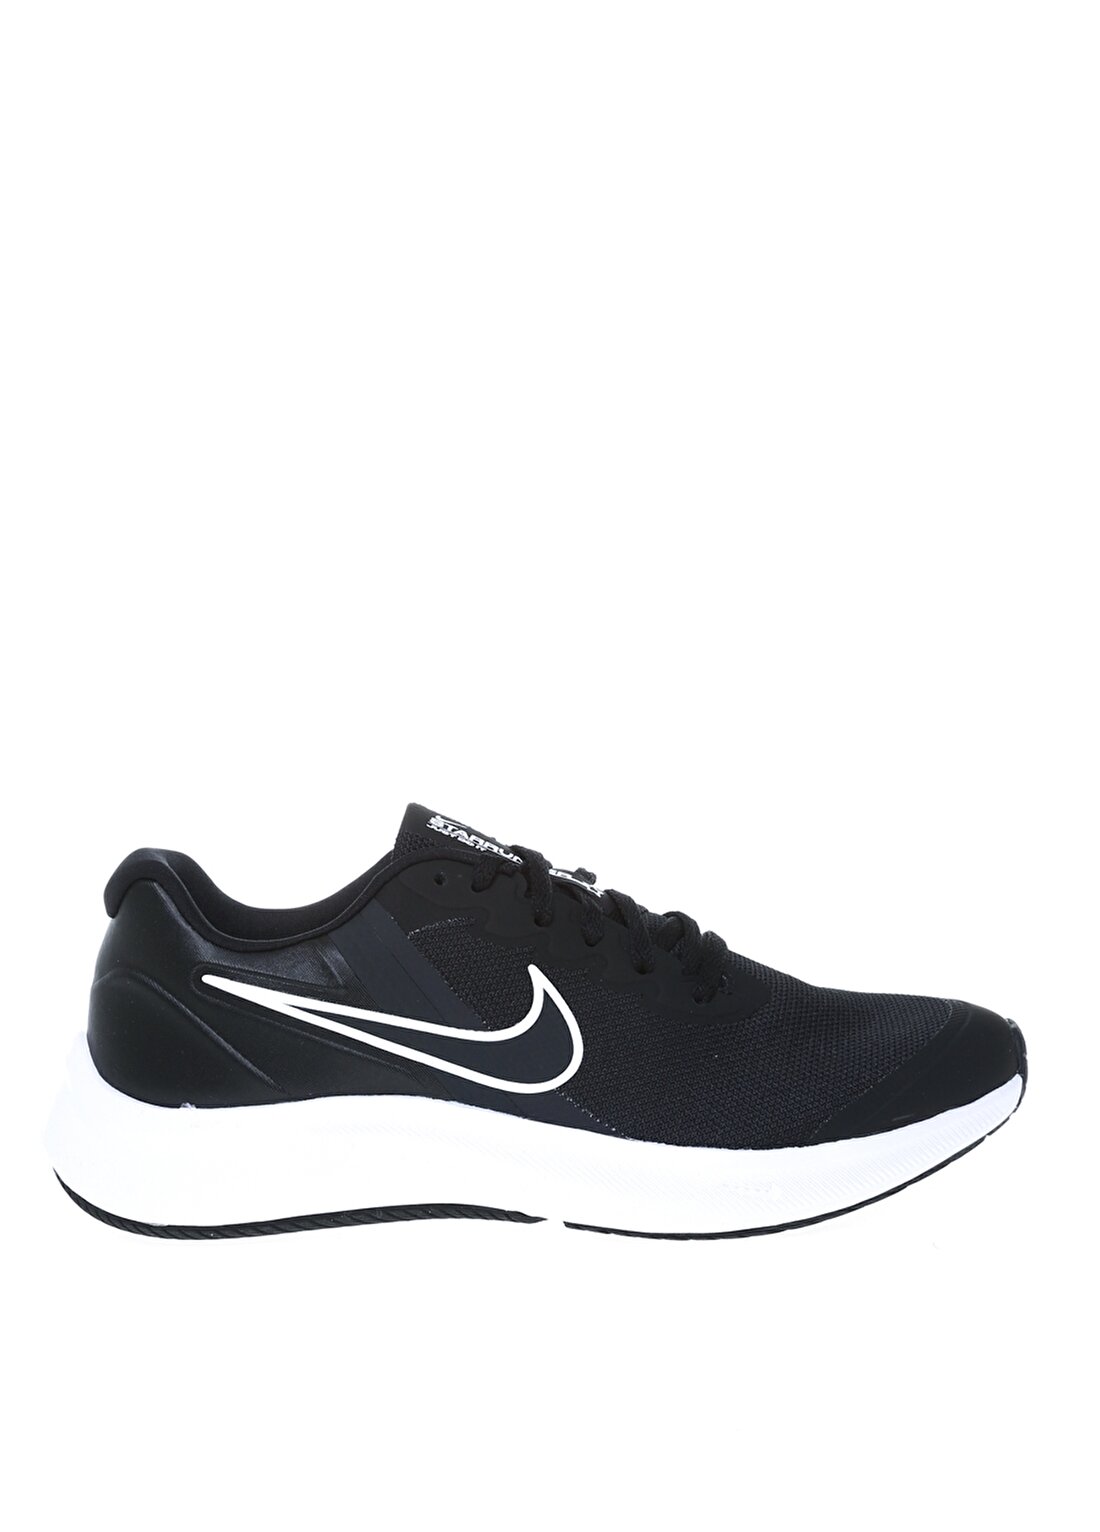 Nike DA2776-003 Nıke Star Runner 3 (Gs) Siyah Erkek Çocuk Yürüyüş Ayakkabısı